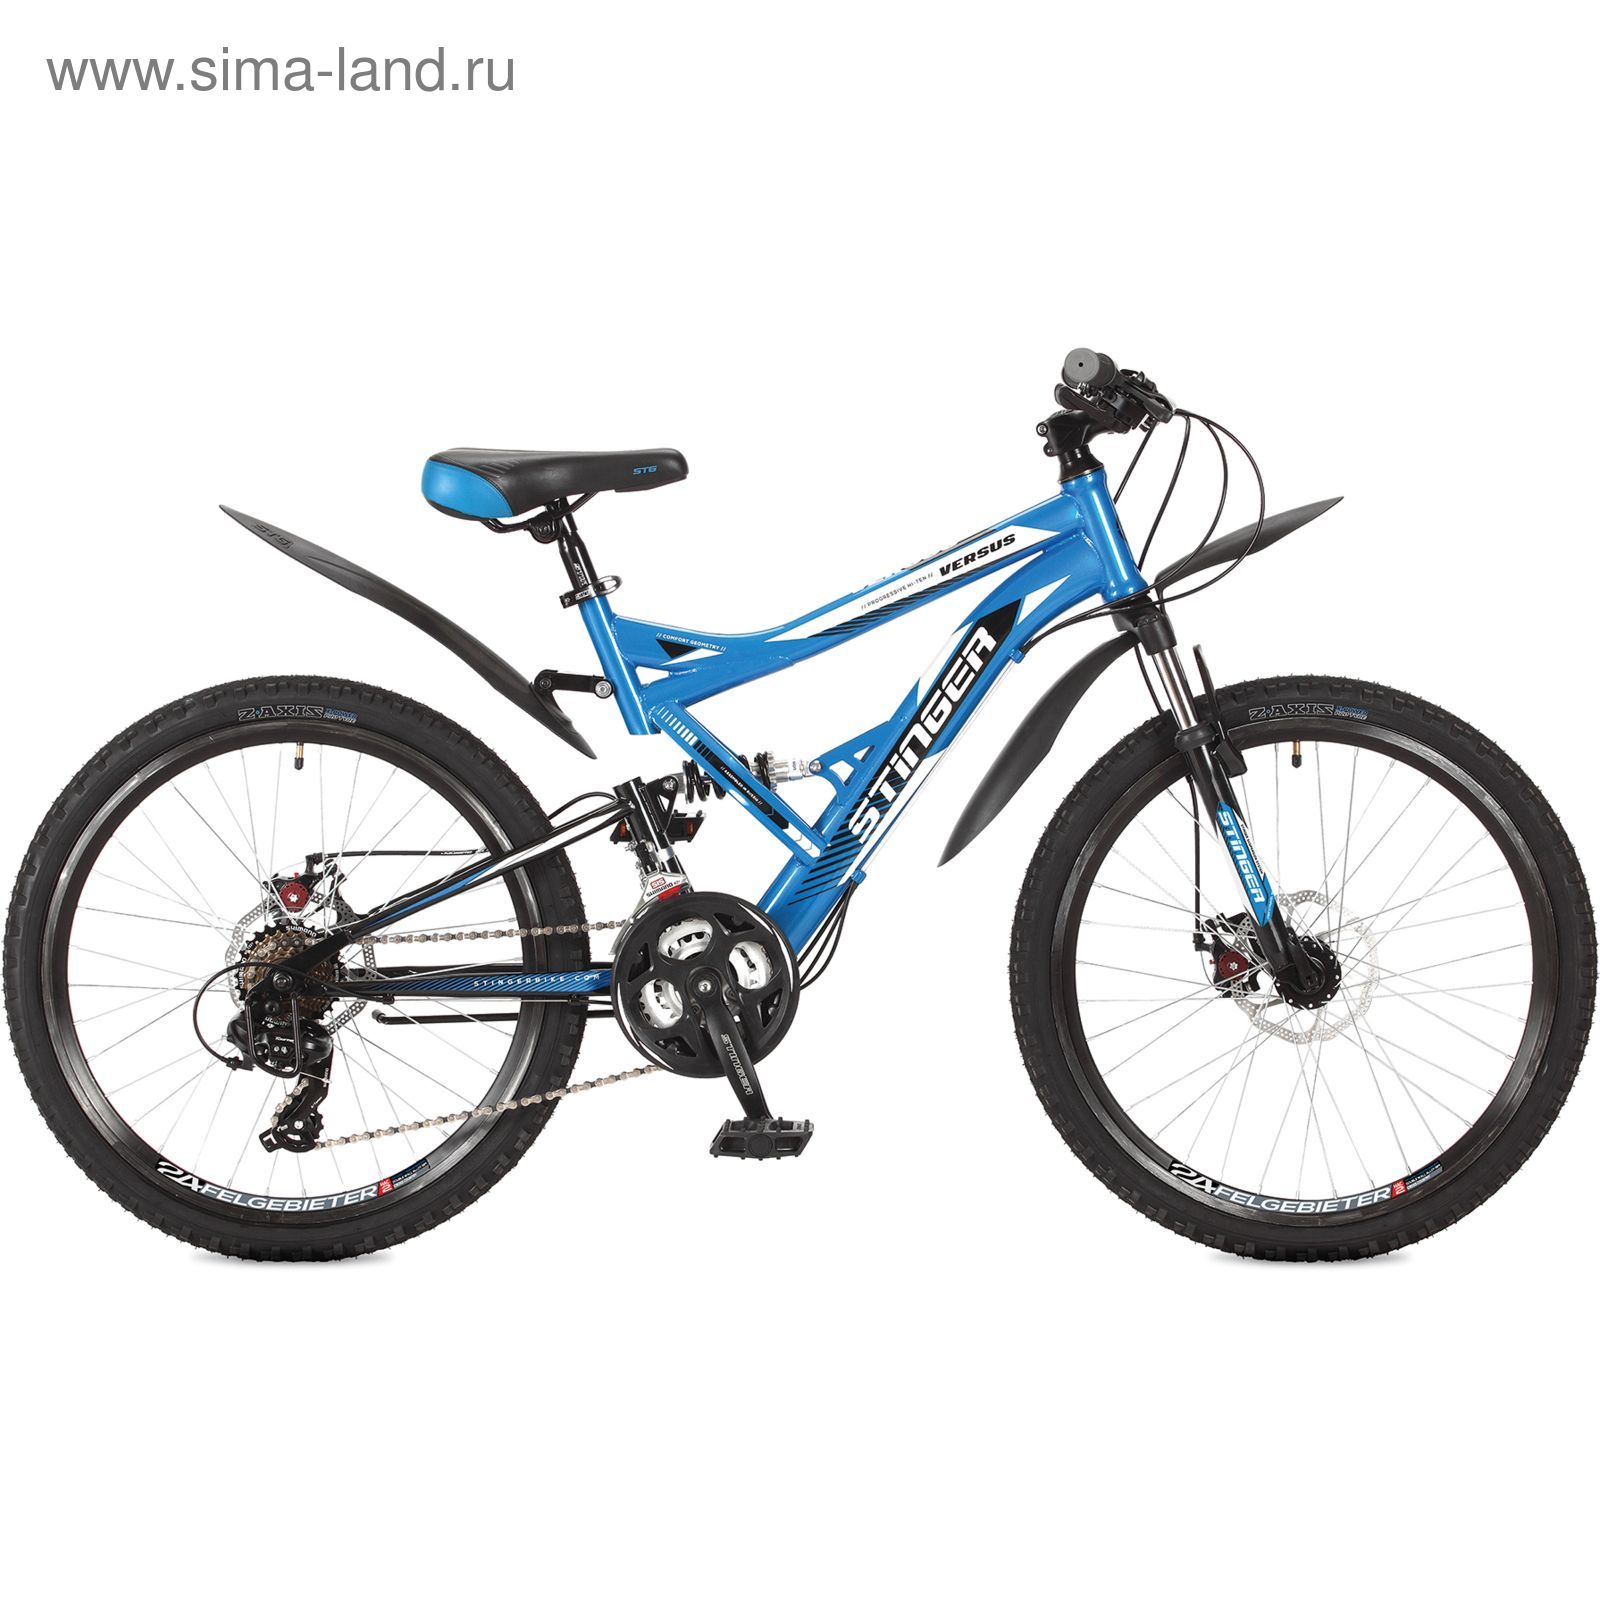 Велосипед 24" Stinger Versus D, 2017, цвет синий, размер 16,5"